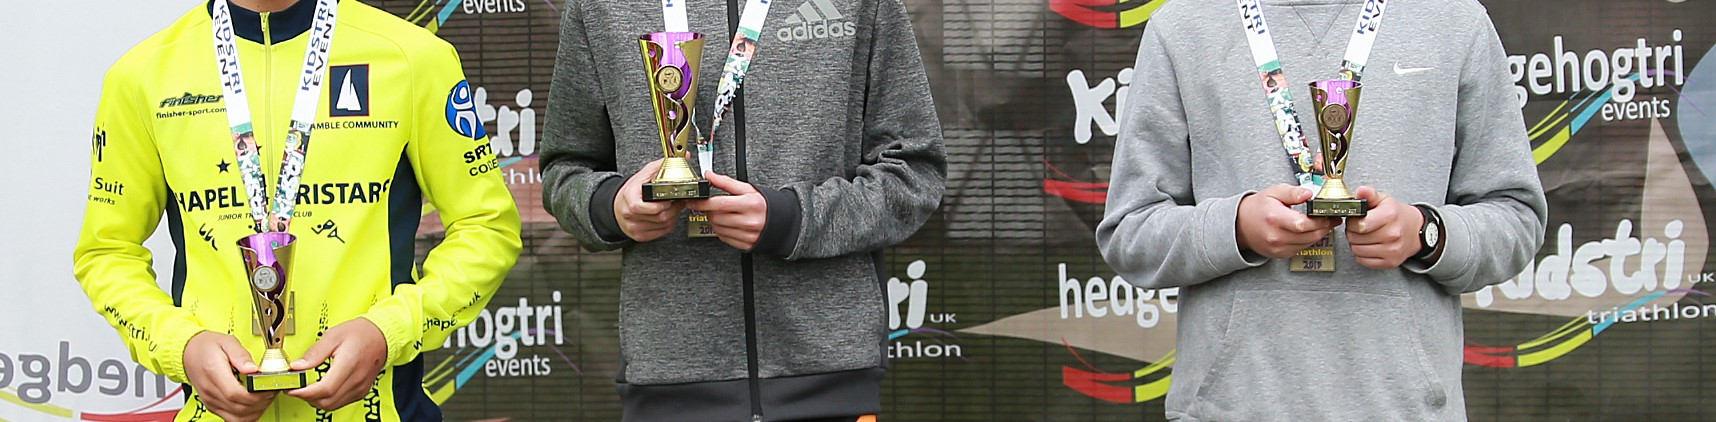 KidstriUK Worthing Charity Duathlon, Ind 2km Run & Team FUN Relay carousel image 4